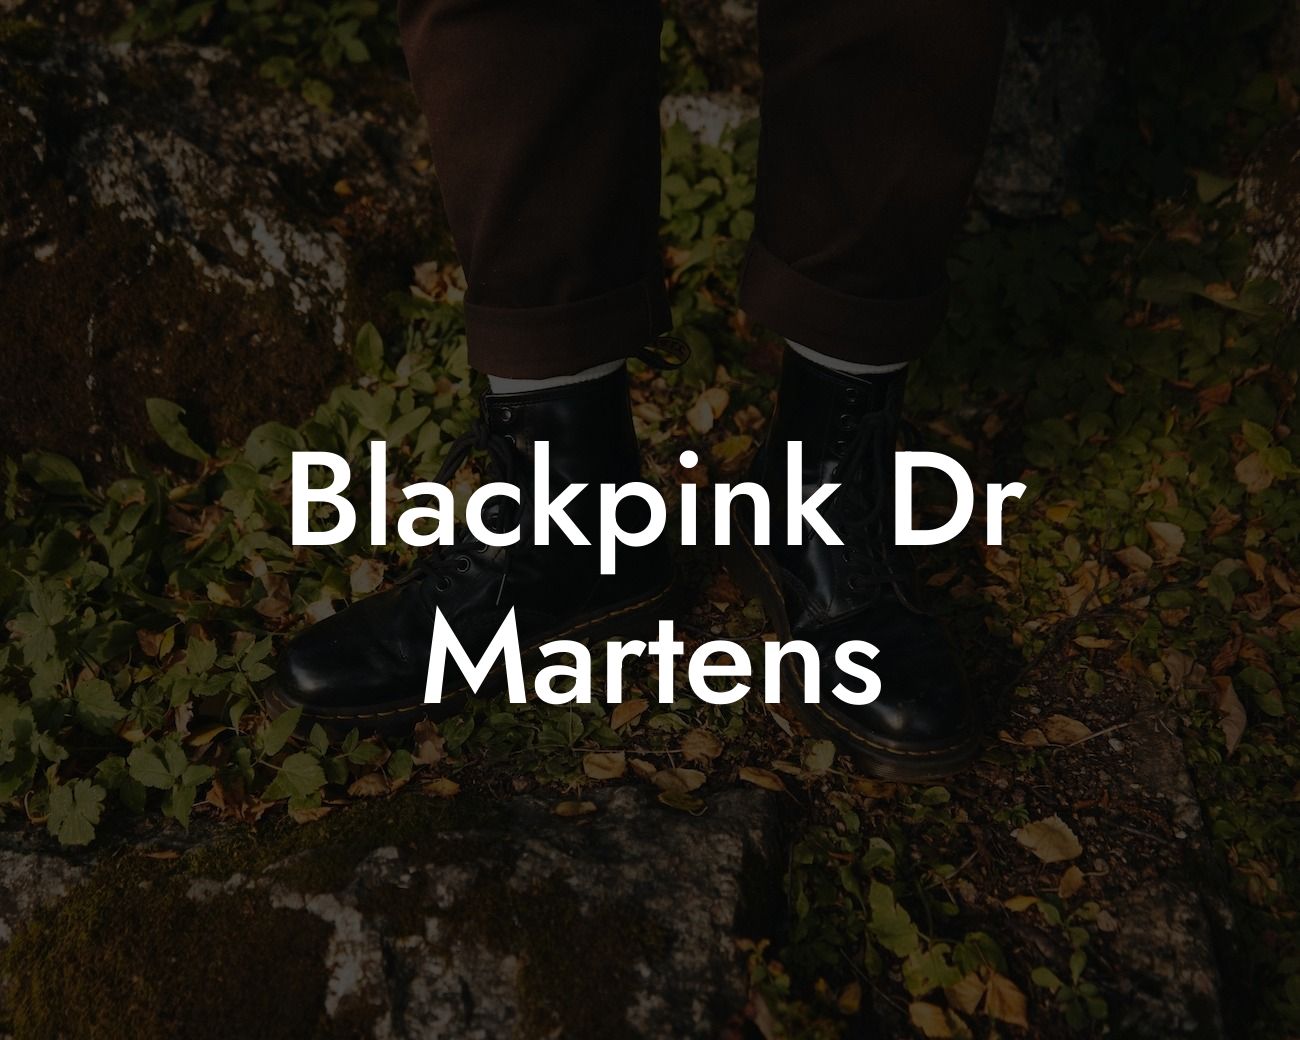 Blackpink Dr Martens